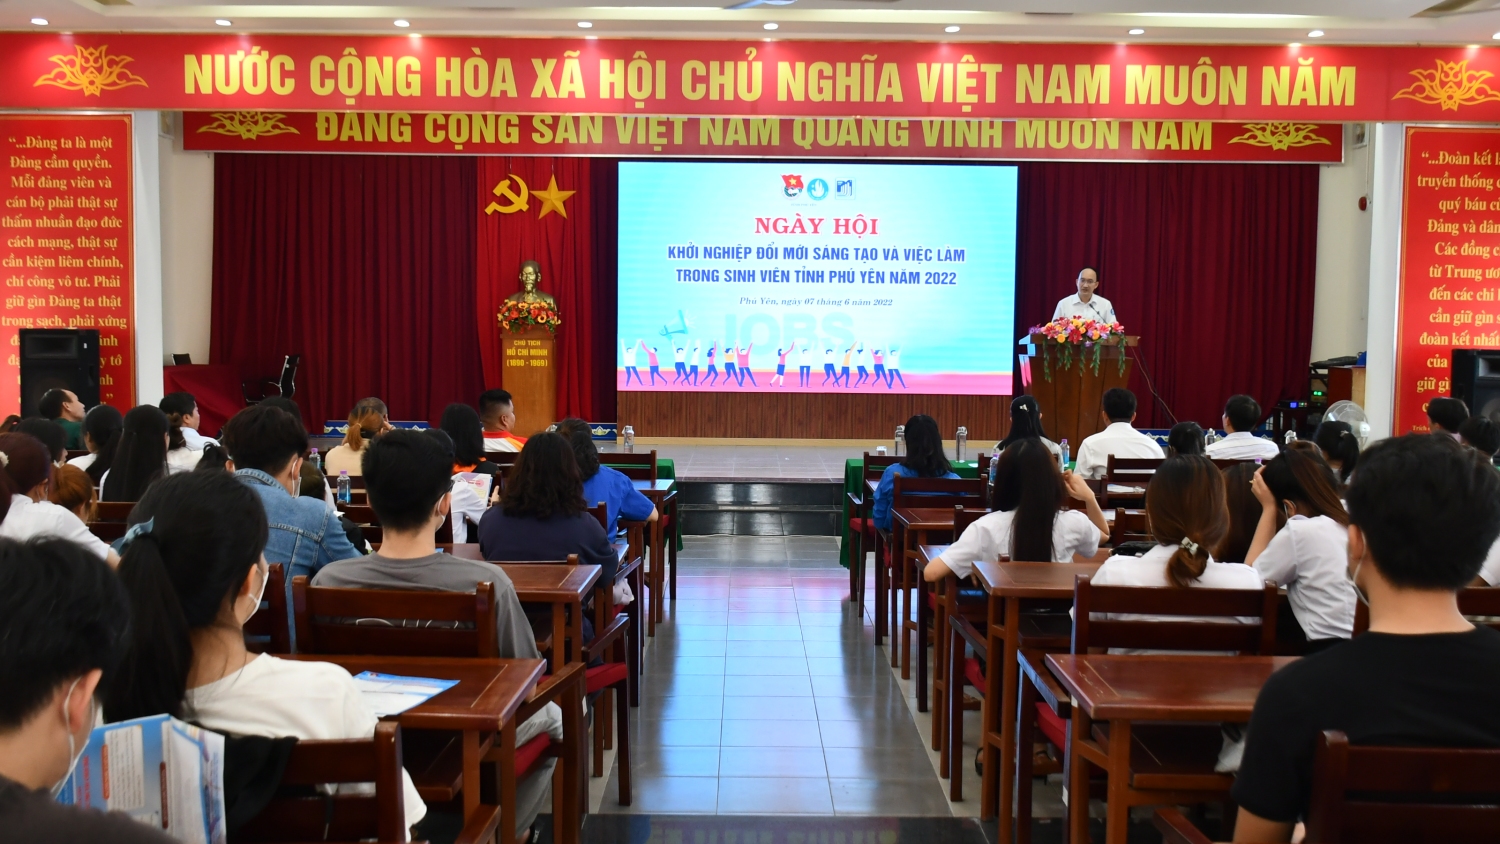 Quang cảnh Ngày hội khởi nghiệp đổi mới sáng tạo và việc làm cho sinh viên tỉnh Phú Yên năm 2022.